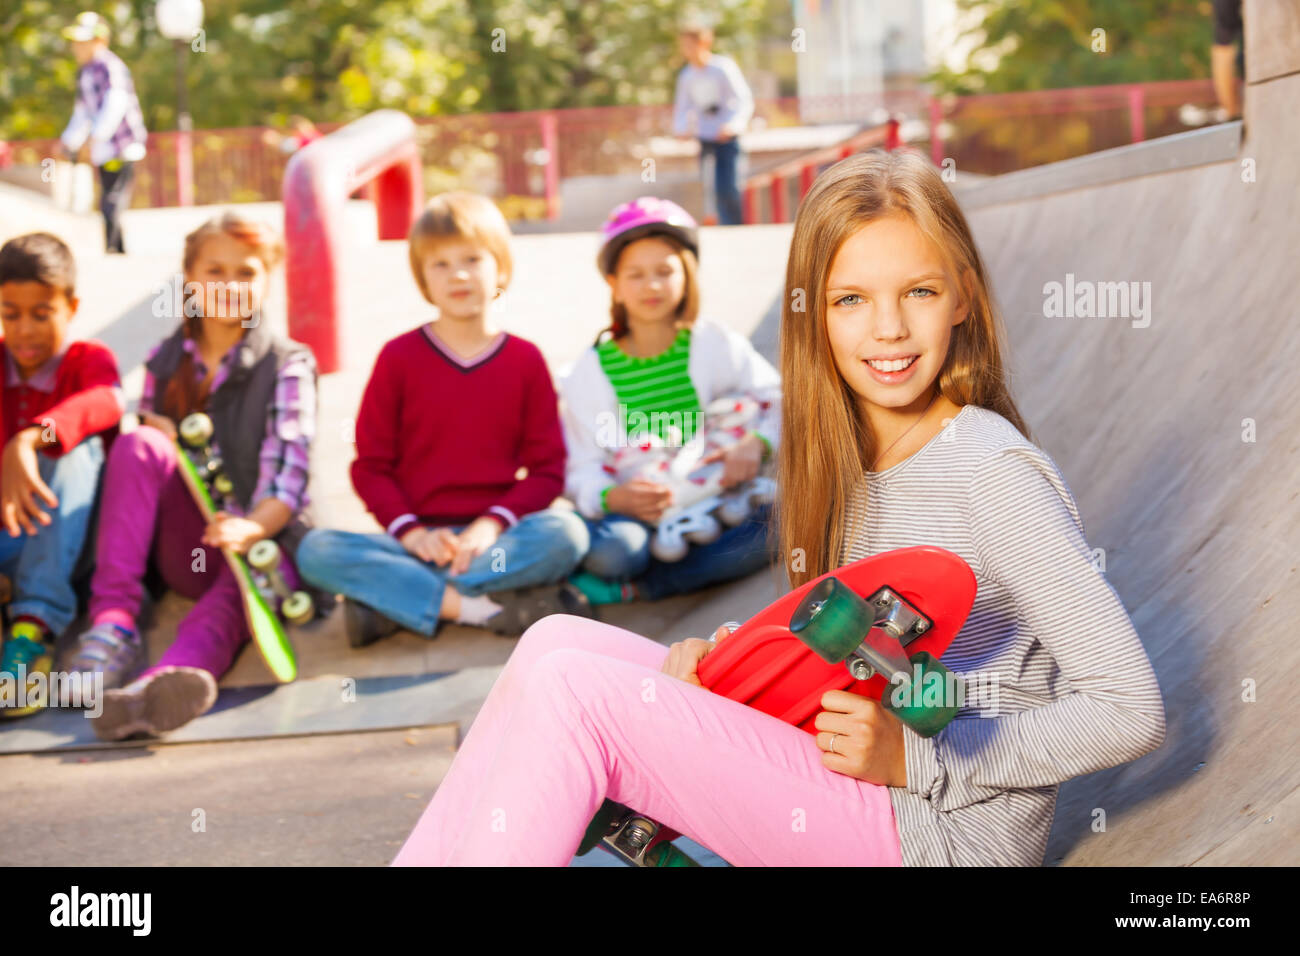 Girl with skateboard et les enfants assis derrière Banque D'Images